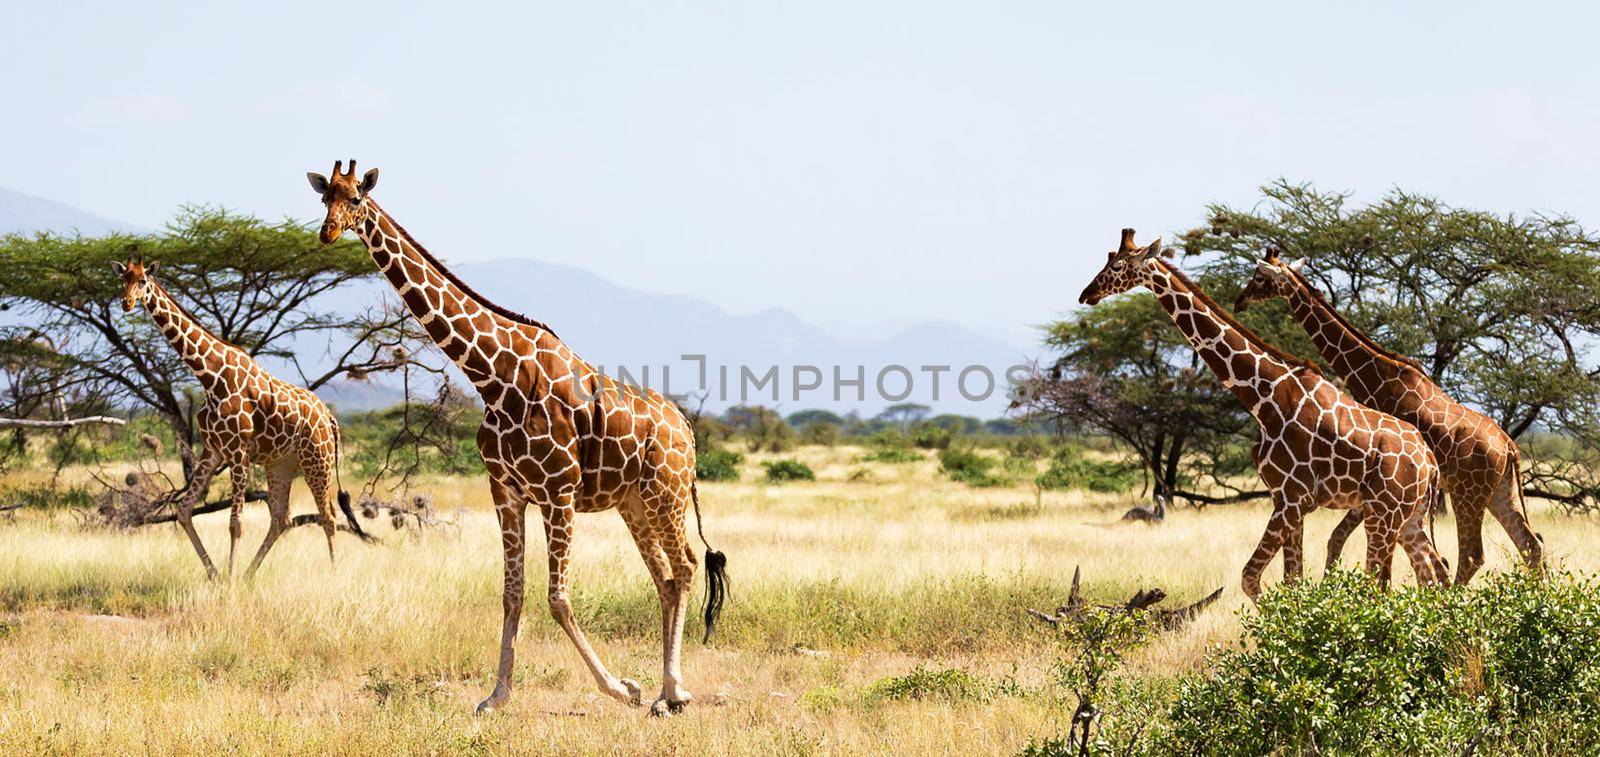 Somalia wildlife  Pictures